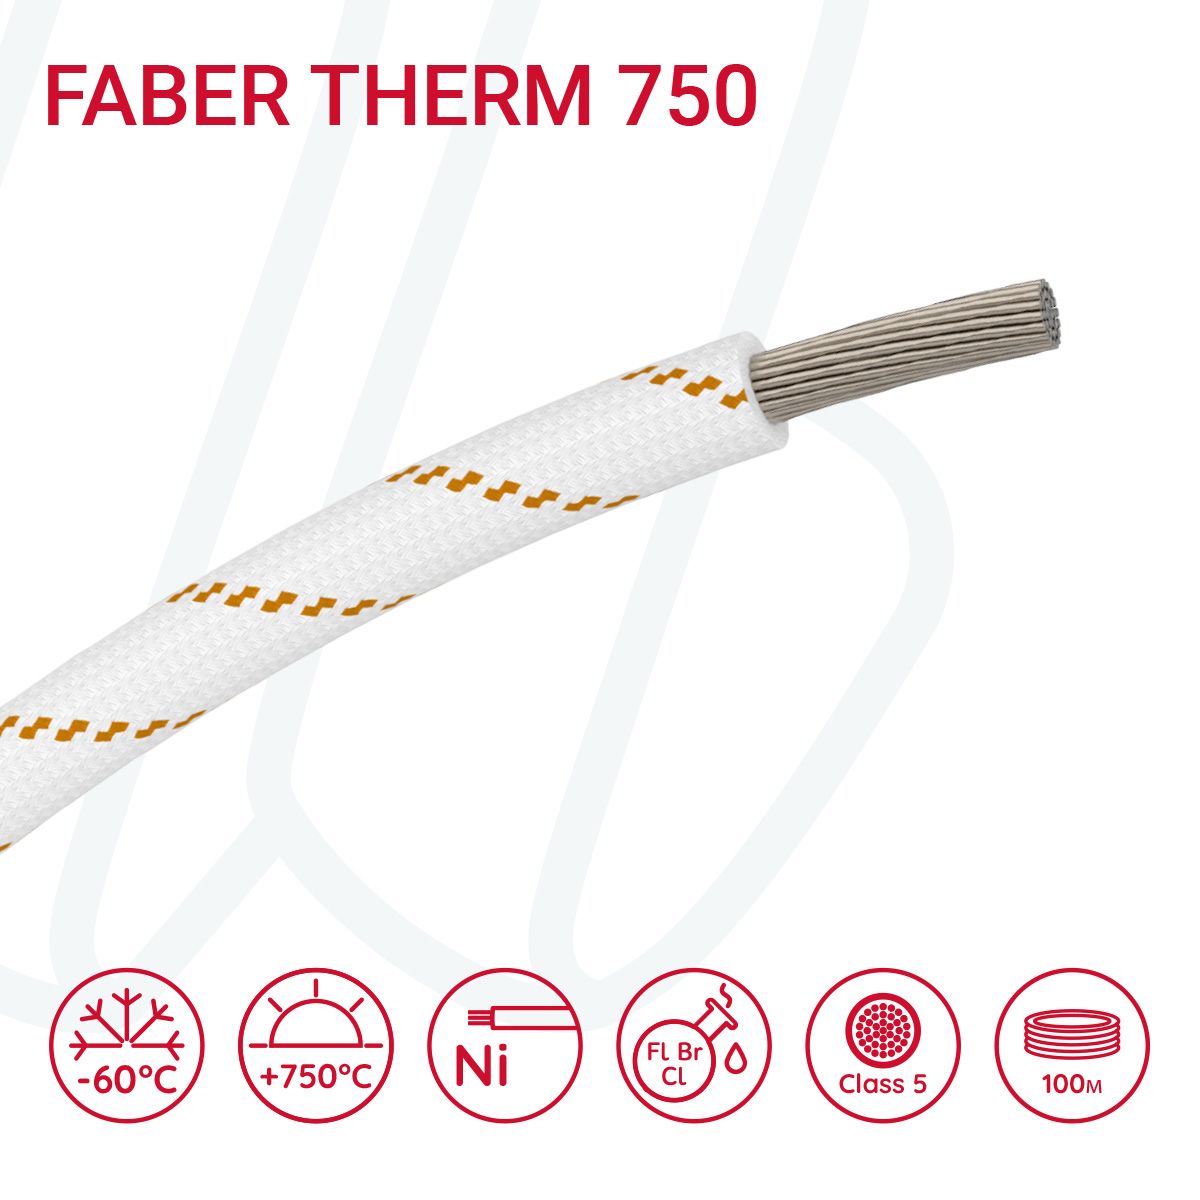 Провід термостійкий FABER THERM 750 01X4 в плетінні з помаранчевою ниткою, 01, 4